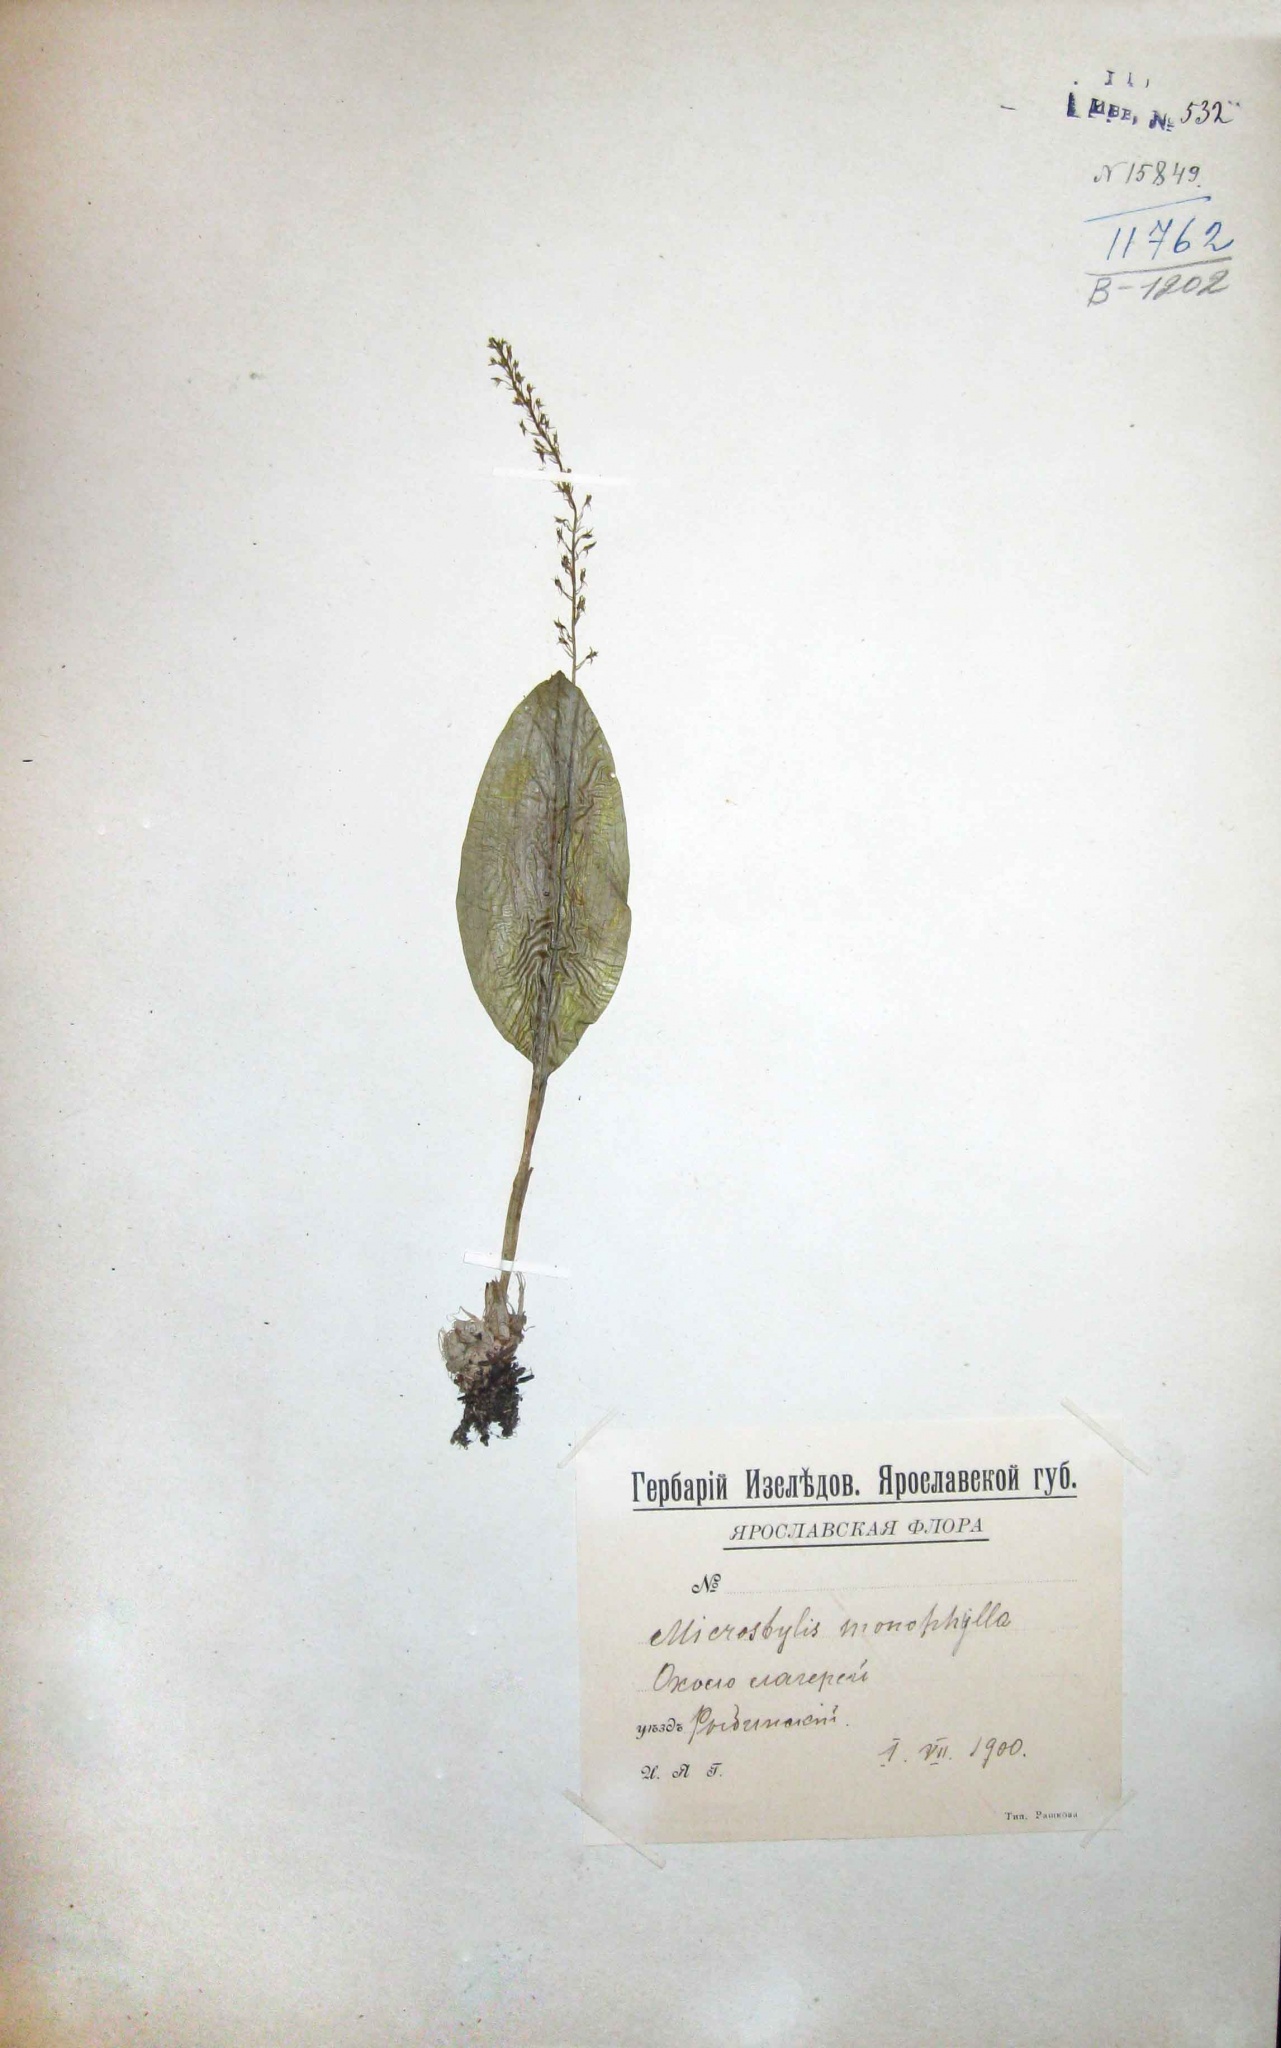 Кокушник комарниковый (длиннорогий) (Gymnadenia conopsea) — редкий вид, занесенный в Красную книгу Ярославской области.